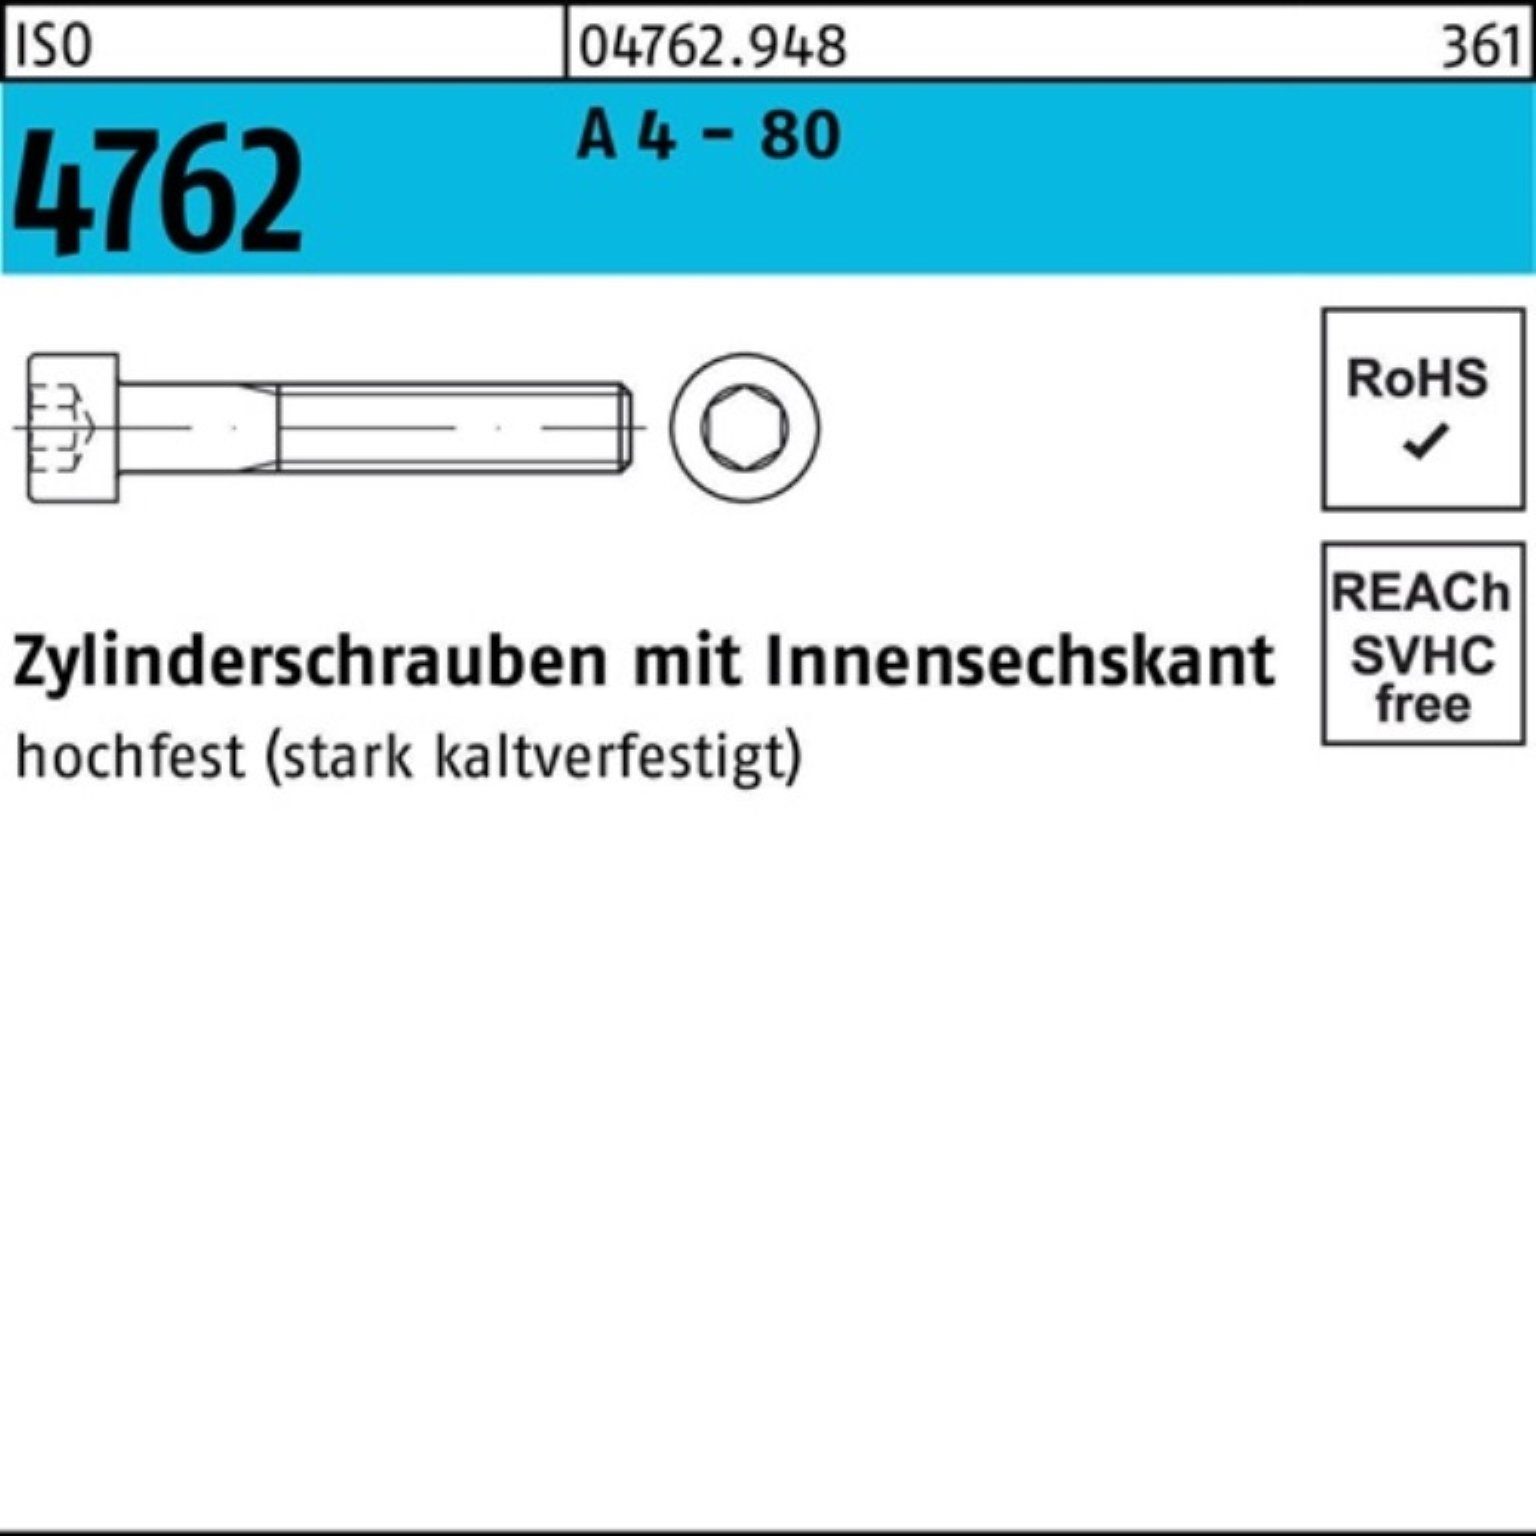 Reyher Zylinderschraube 100er Pack Zylinderschraube ISO 4762 Innen-6kt M10x 50 A 4 - 80 100 St